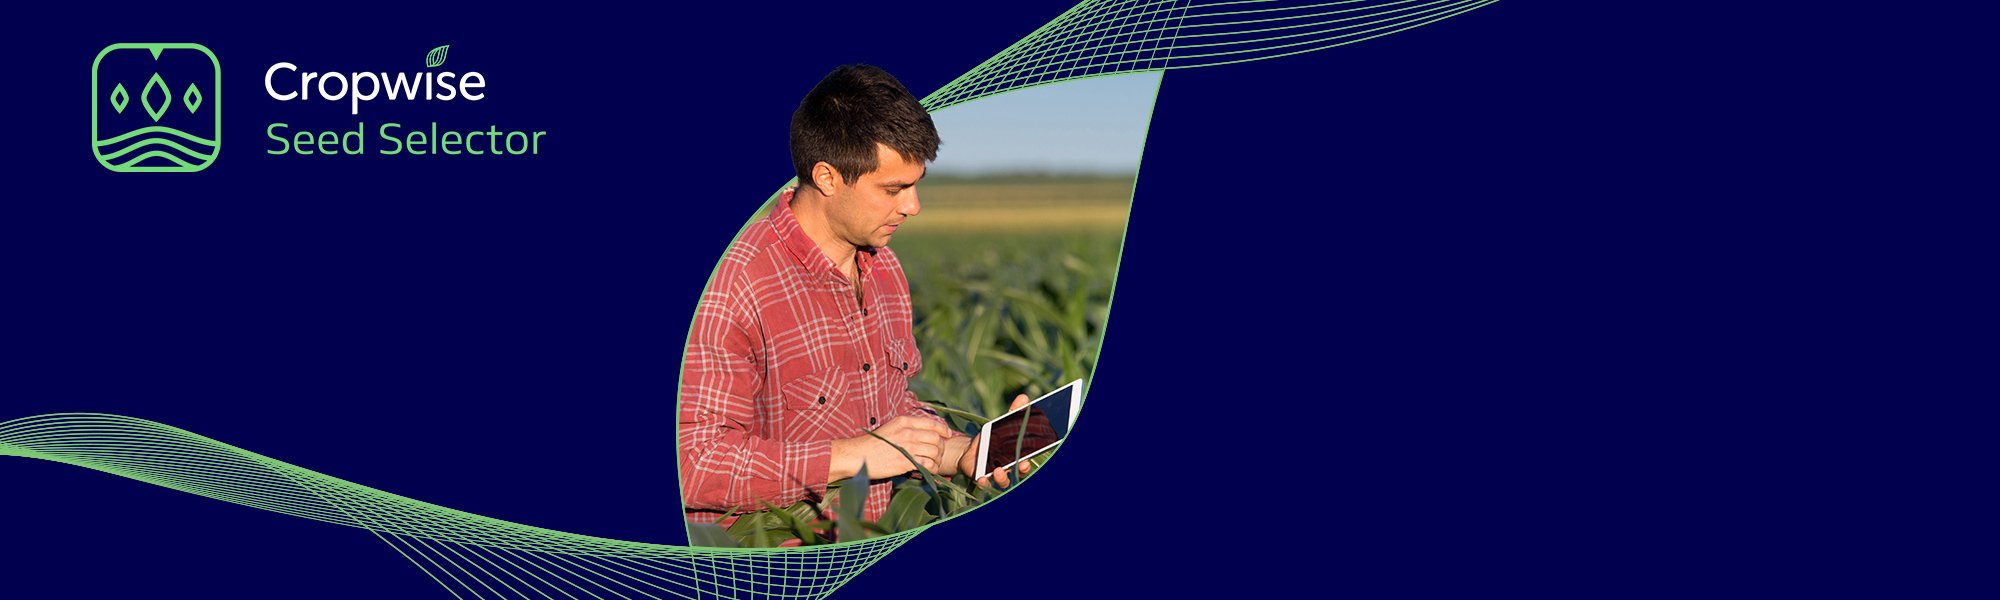 Cropwise Seed Selector è una App che consente agli agricoltori e ai tecnici di scegliere il migliore ibrido per ciascun appezzamento dell’azienda agricola, per massimizzare le rese.